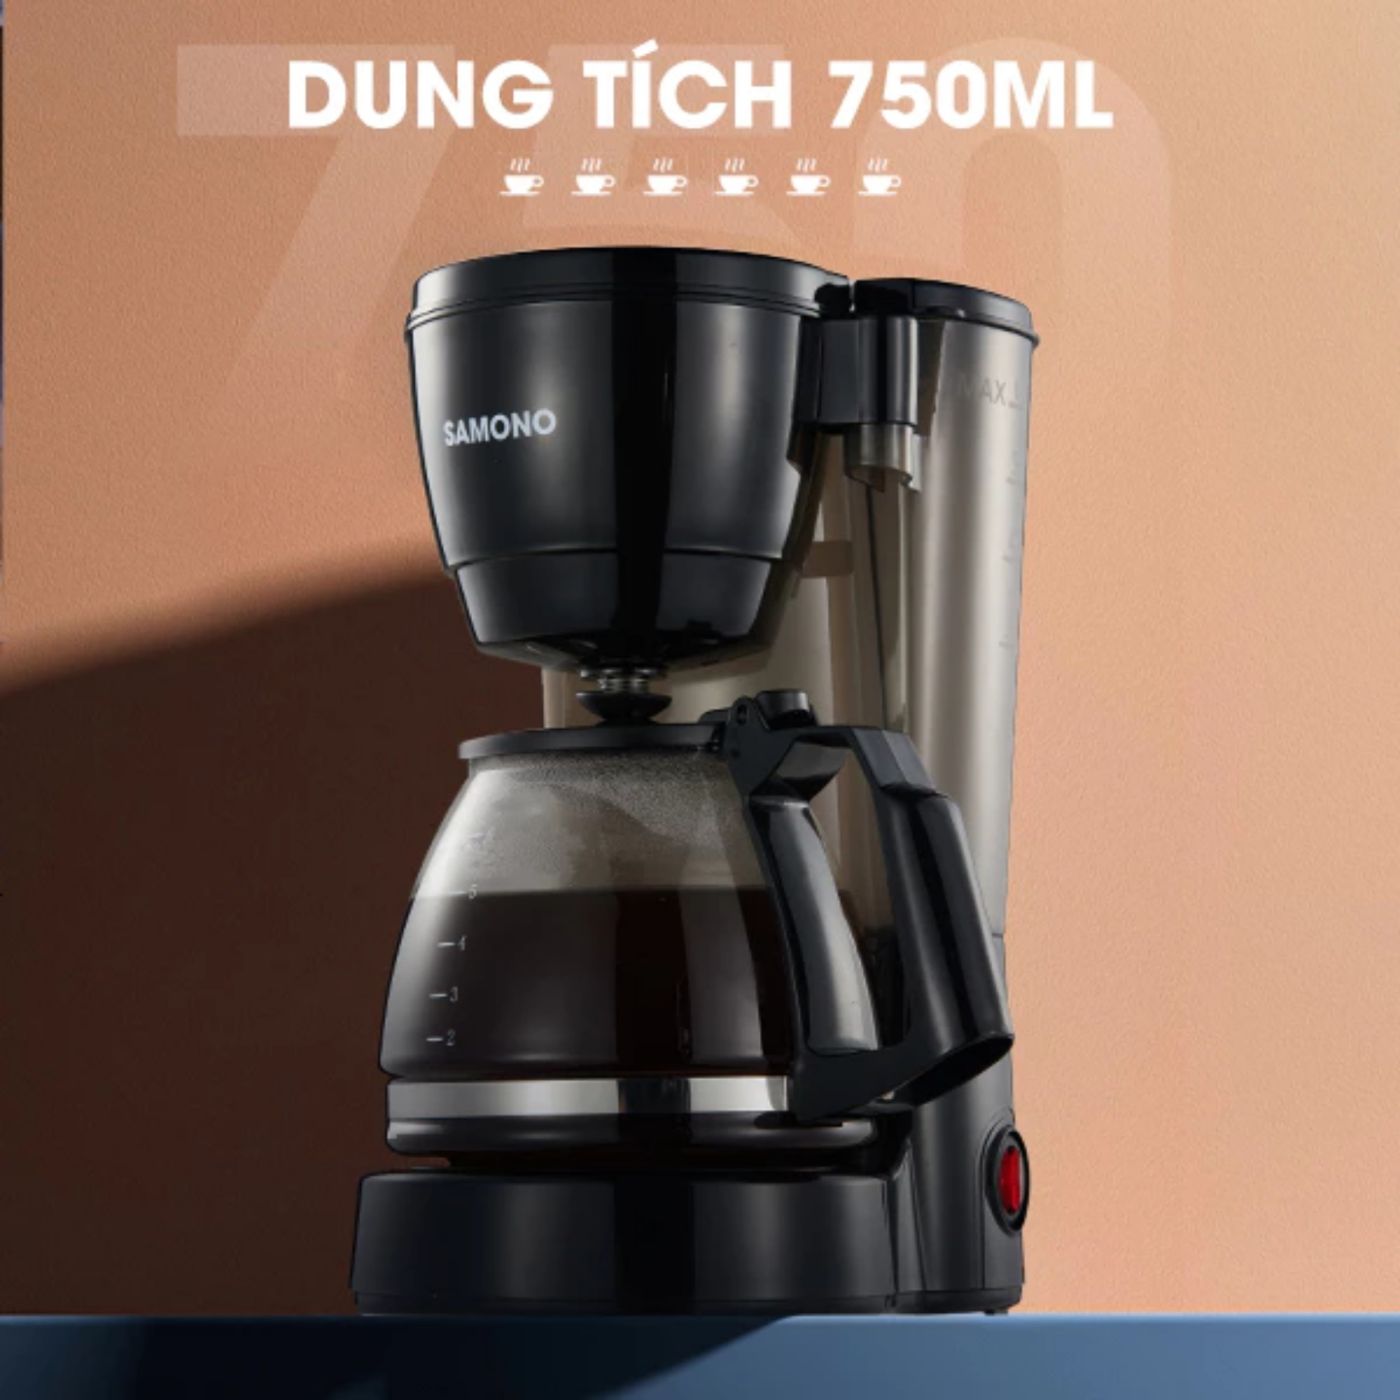 Samono Máy pha cà phê/trà 750ml, chức năng giữ nhiệt, vòi tự ngắt chống rò rỉ, hộp chứa có thể tháo